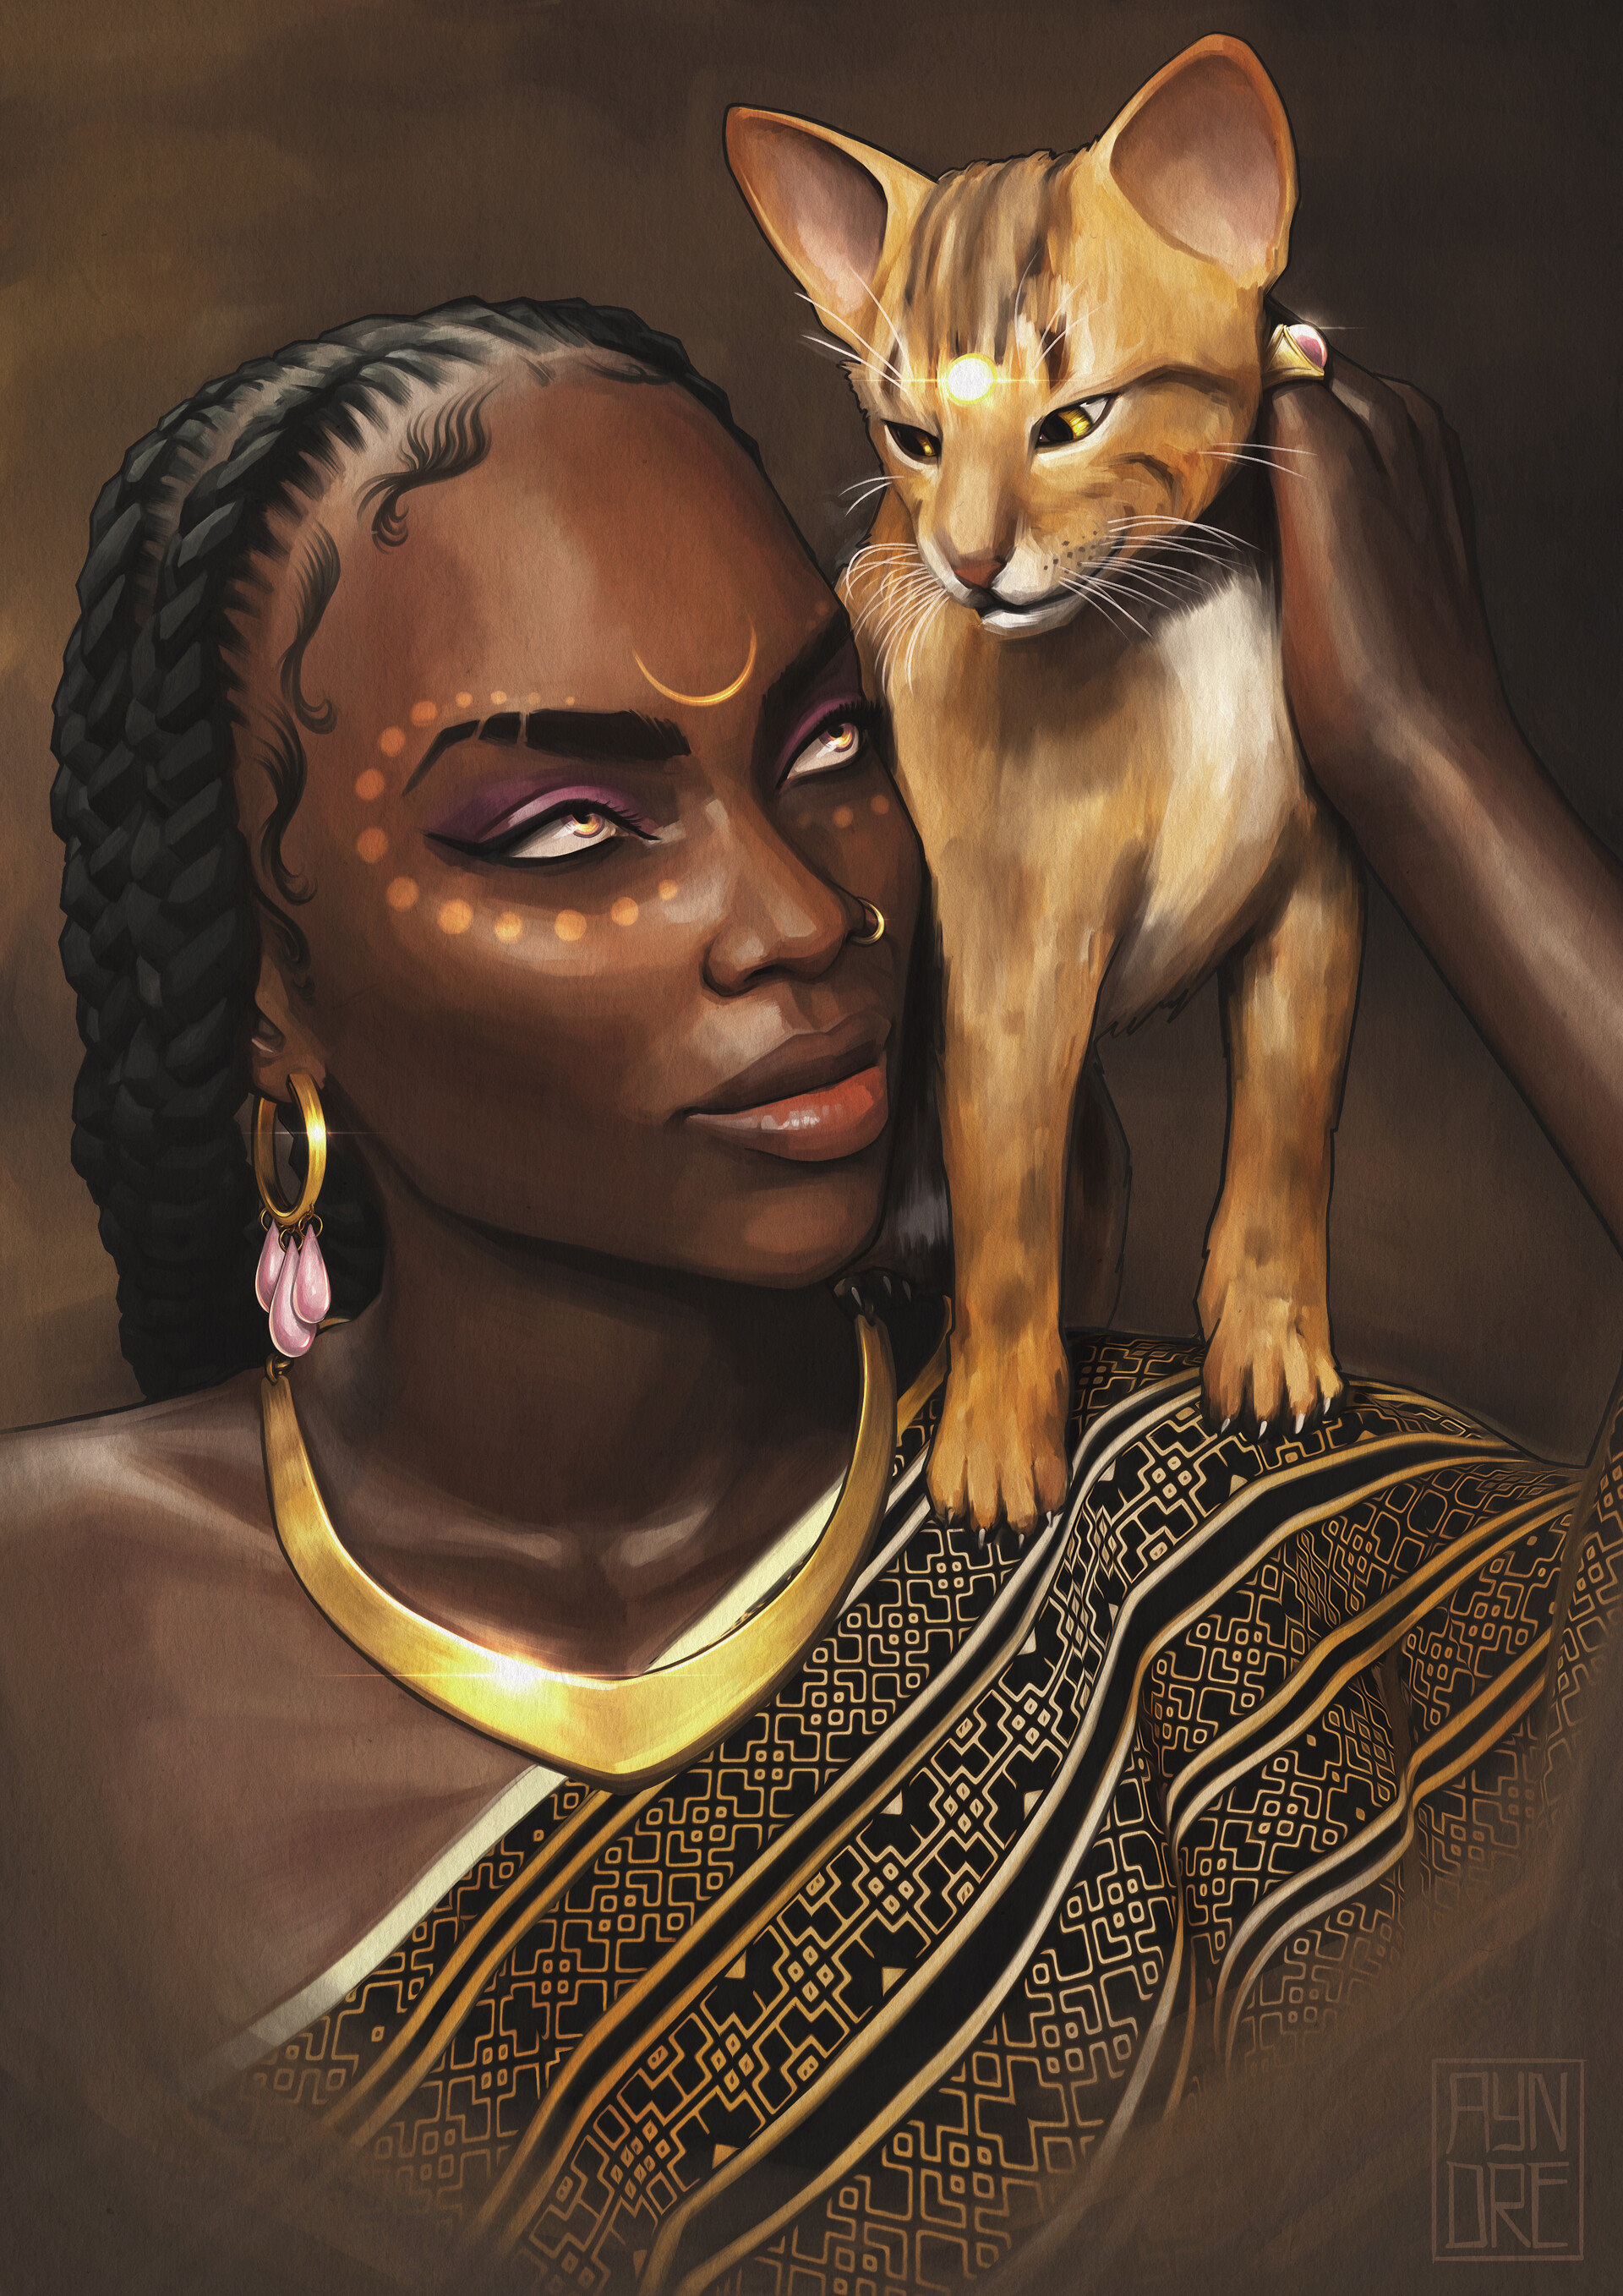 ArtStation - Queen Of Dusk 3, Of Woman & Cat